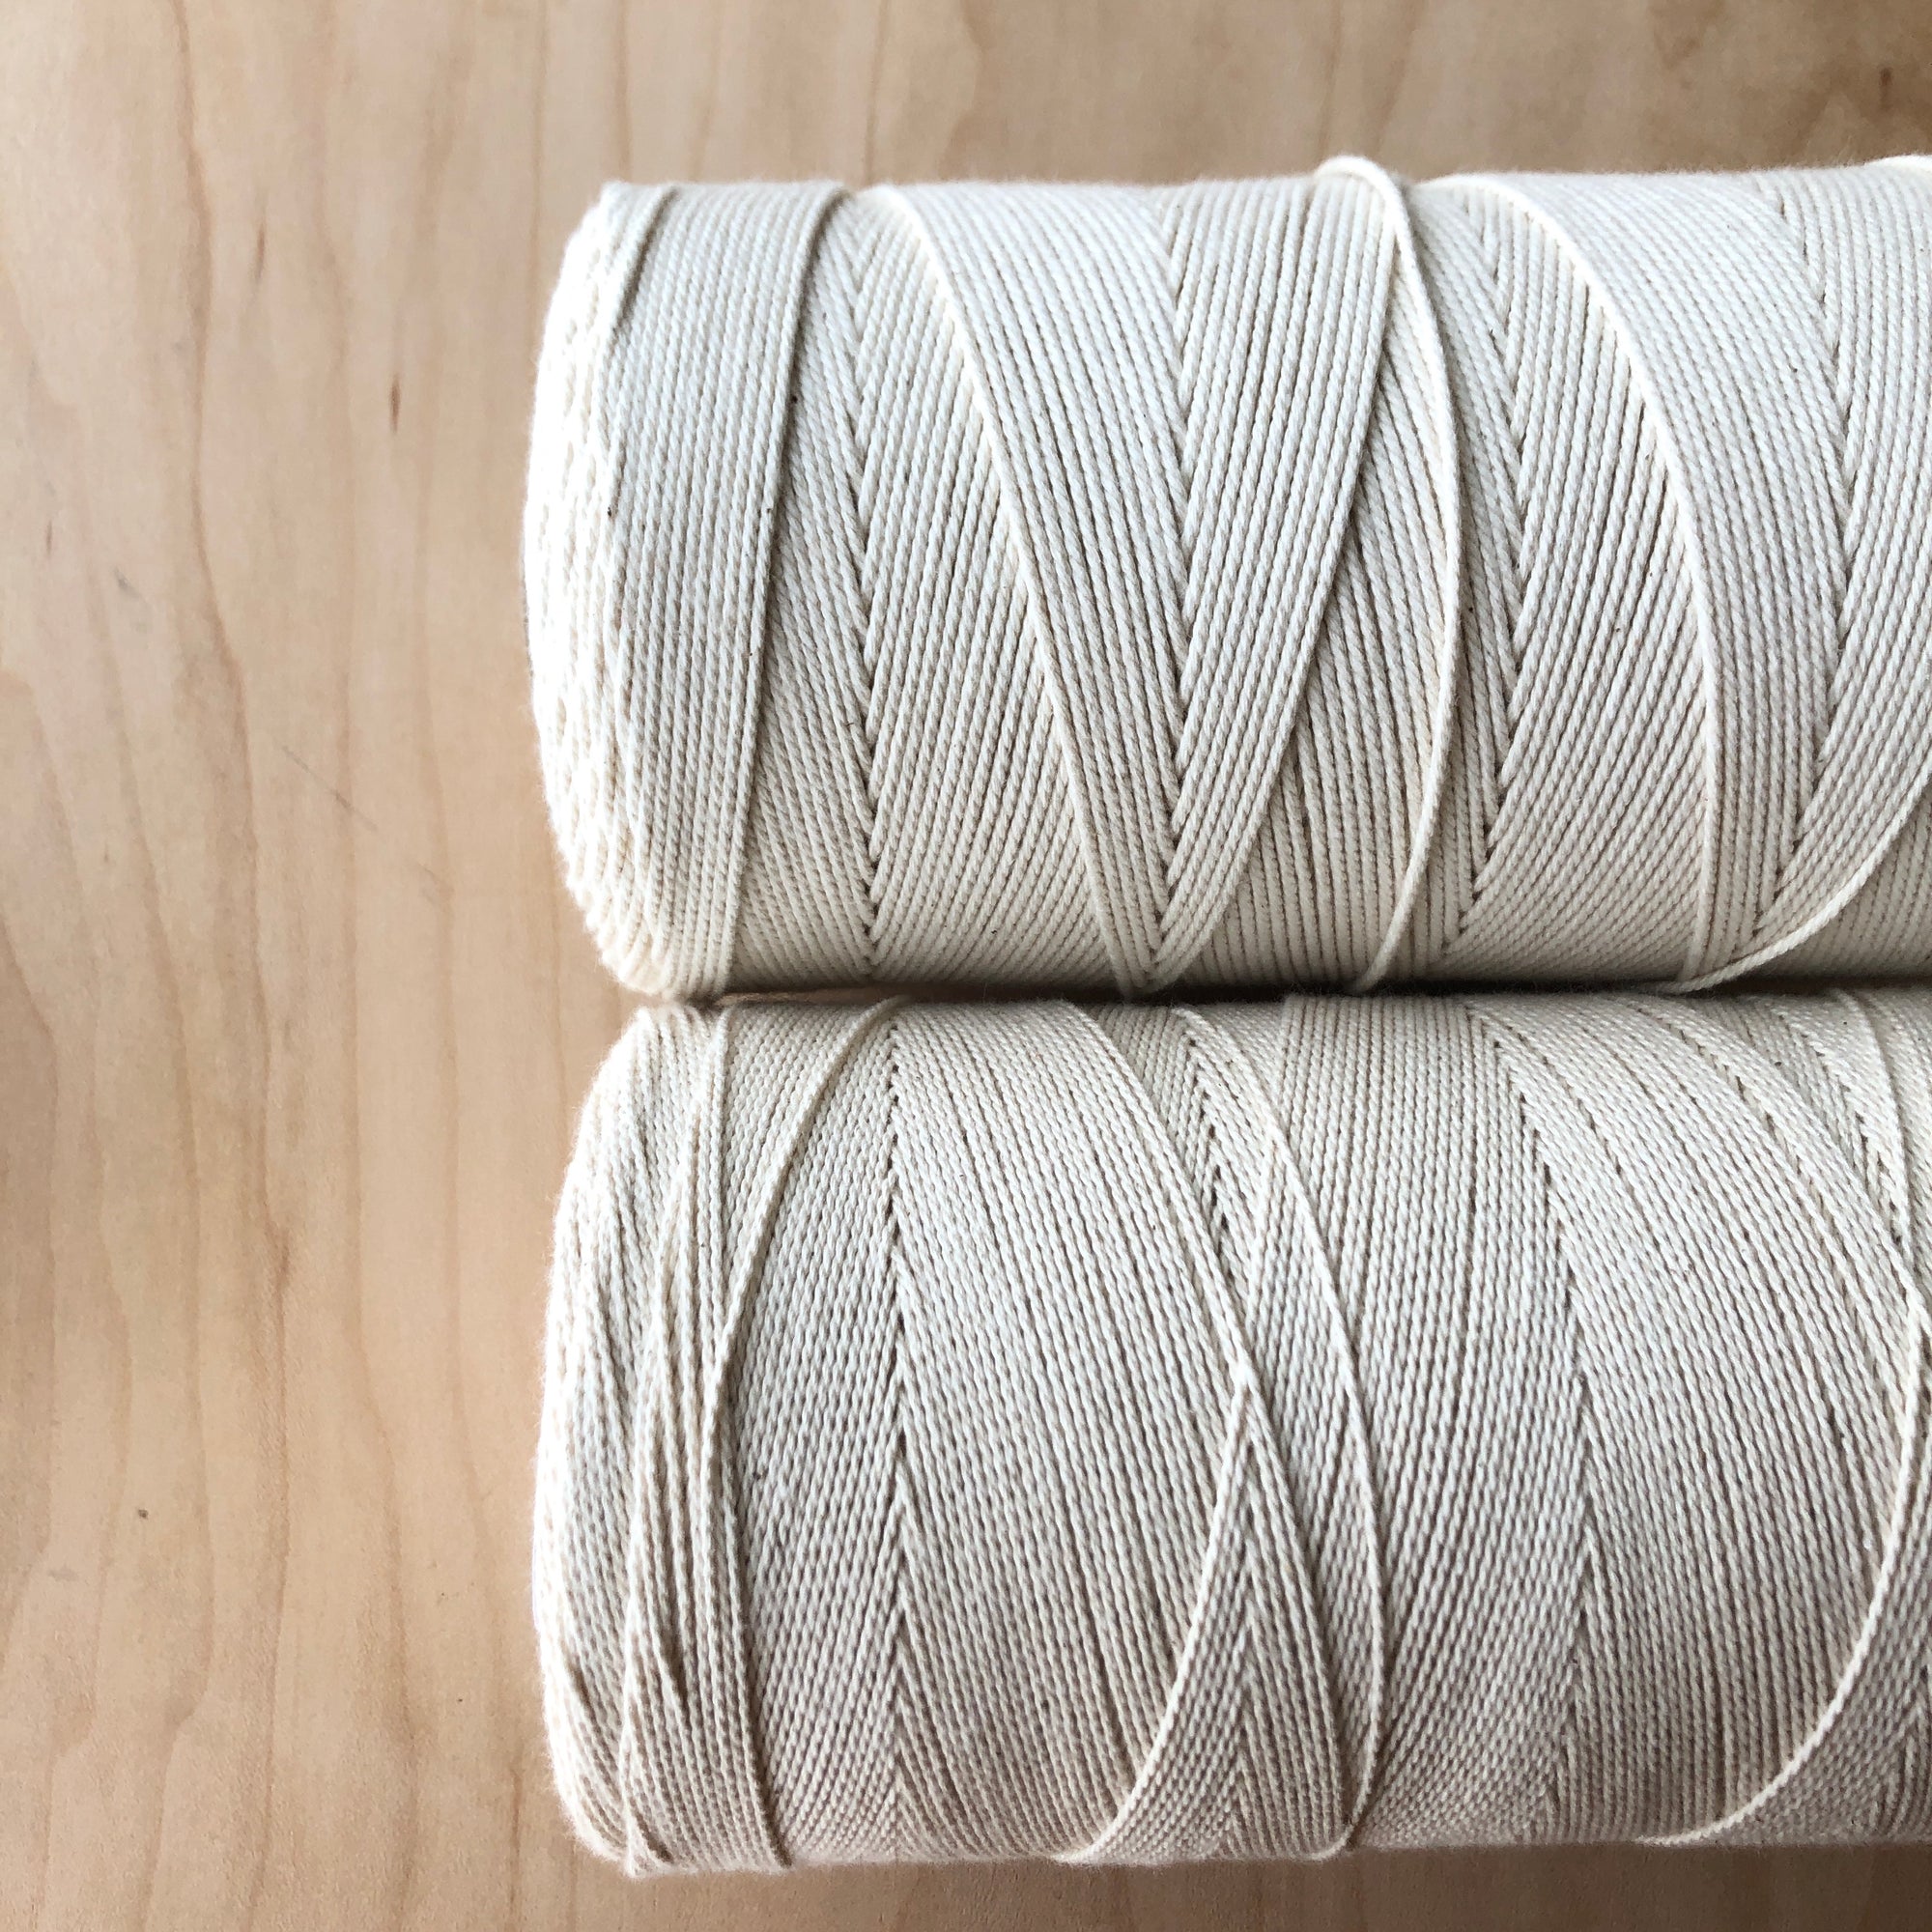 2/8 Cotton - Maurice Brassard - GATHER Textiles Inc.